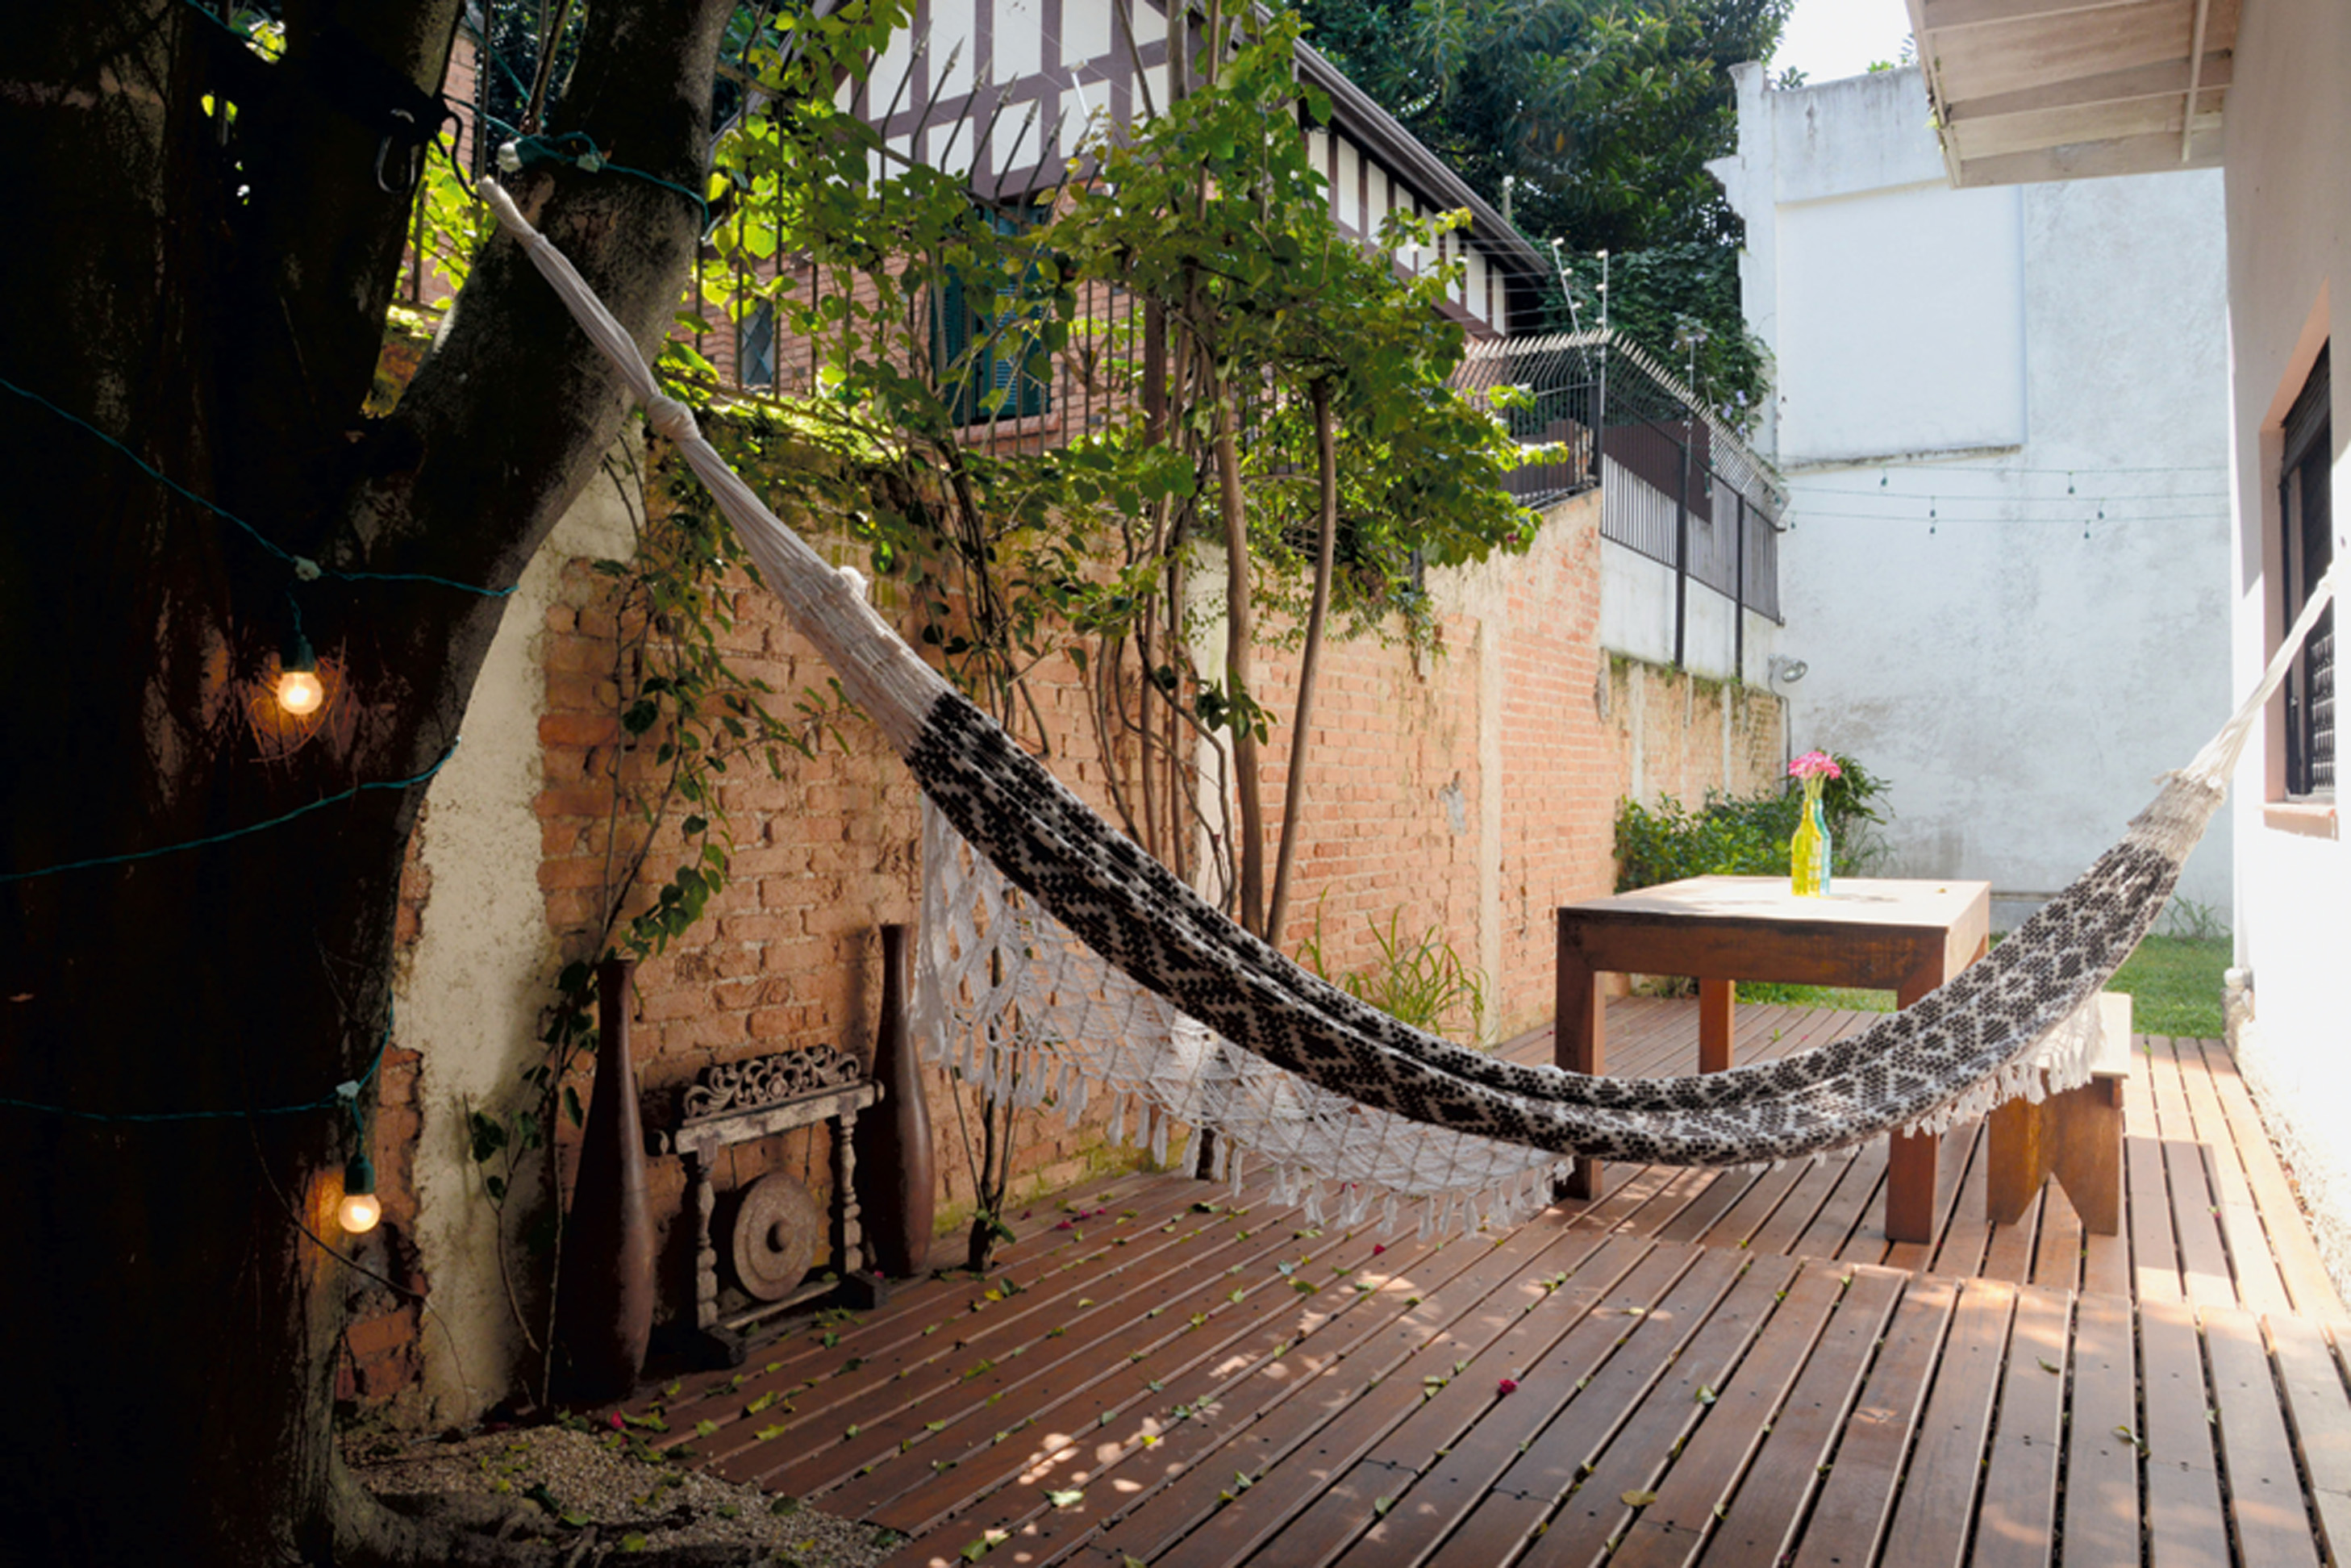 Para relaxar: Por ideia de um arquiteto amigo do casal, foi instalado um deck na lateral da casa, que acabou criando um cantinho a mais de convivência